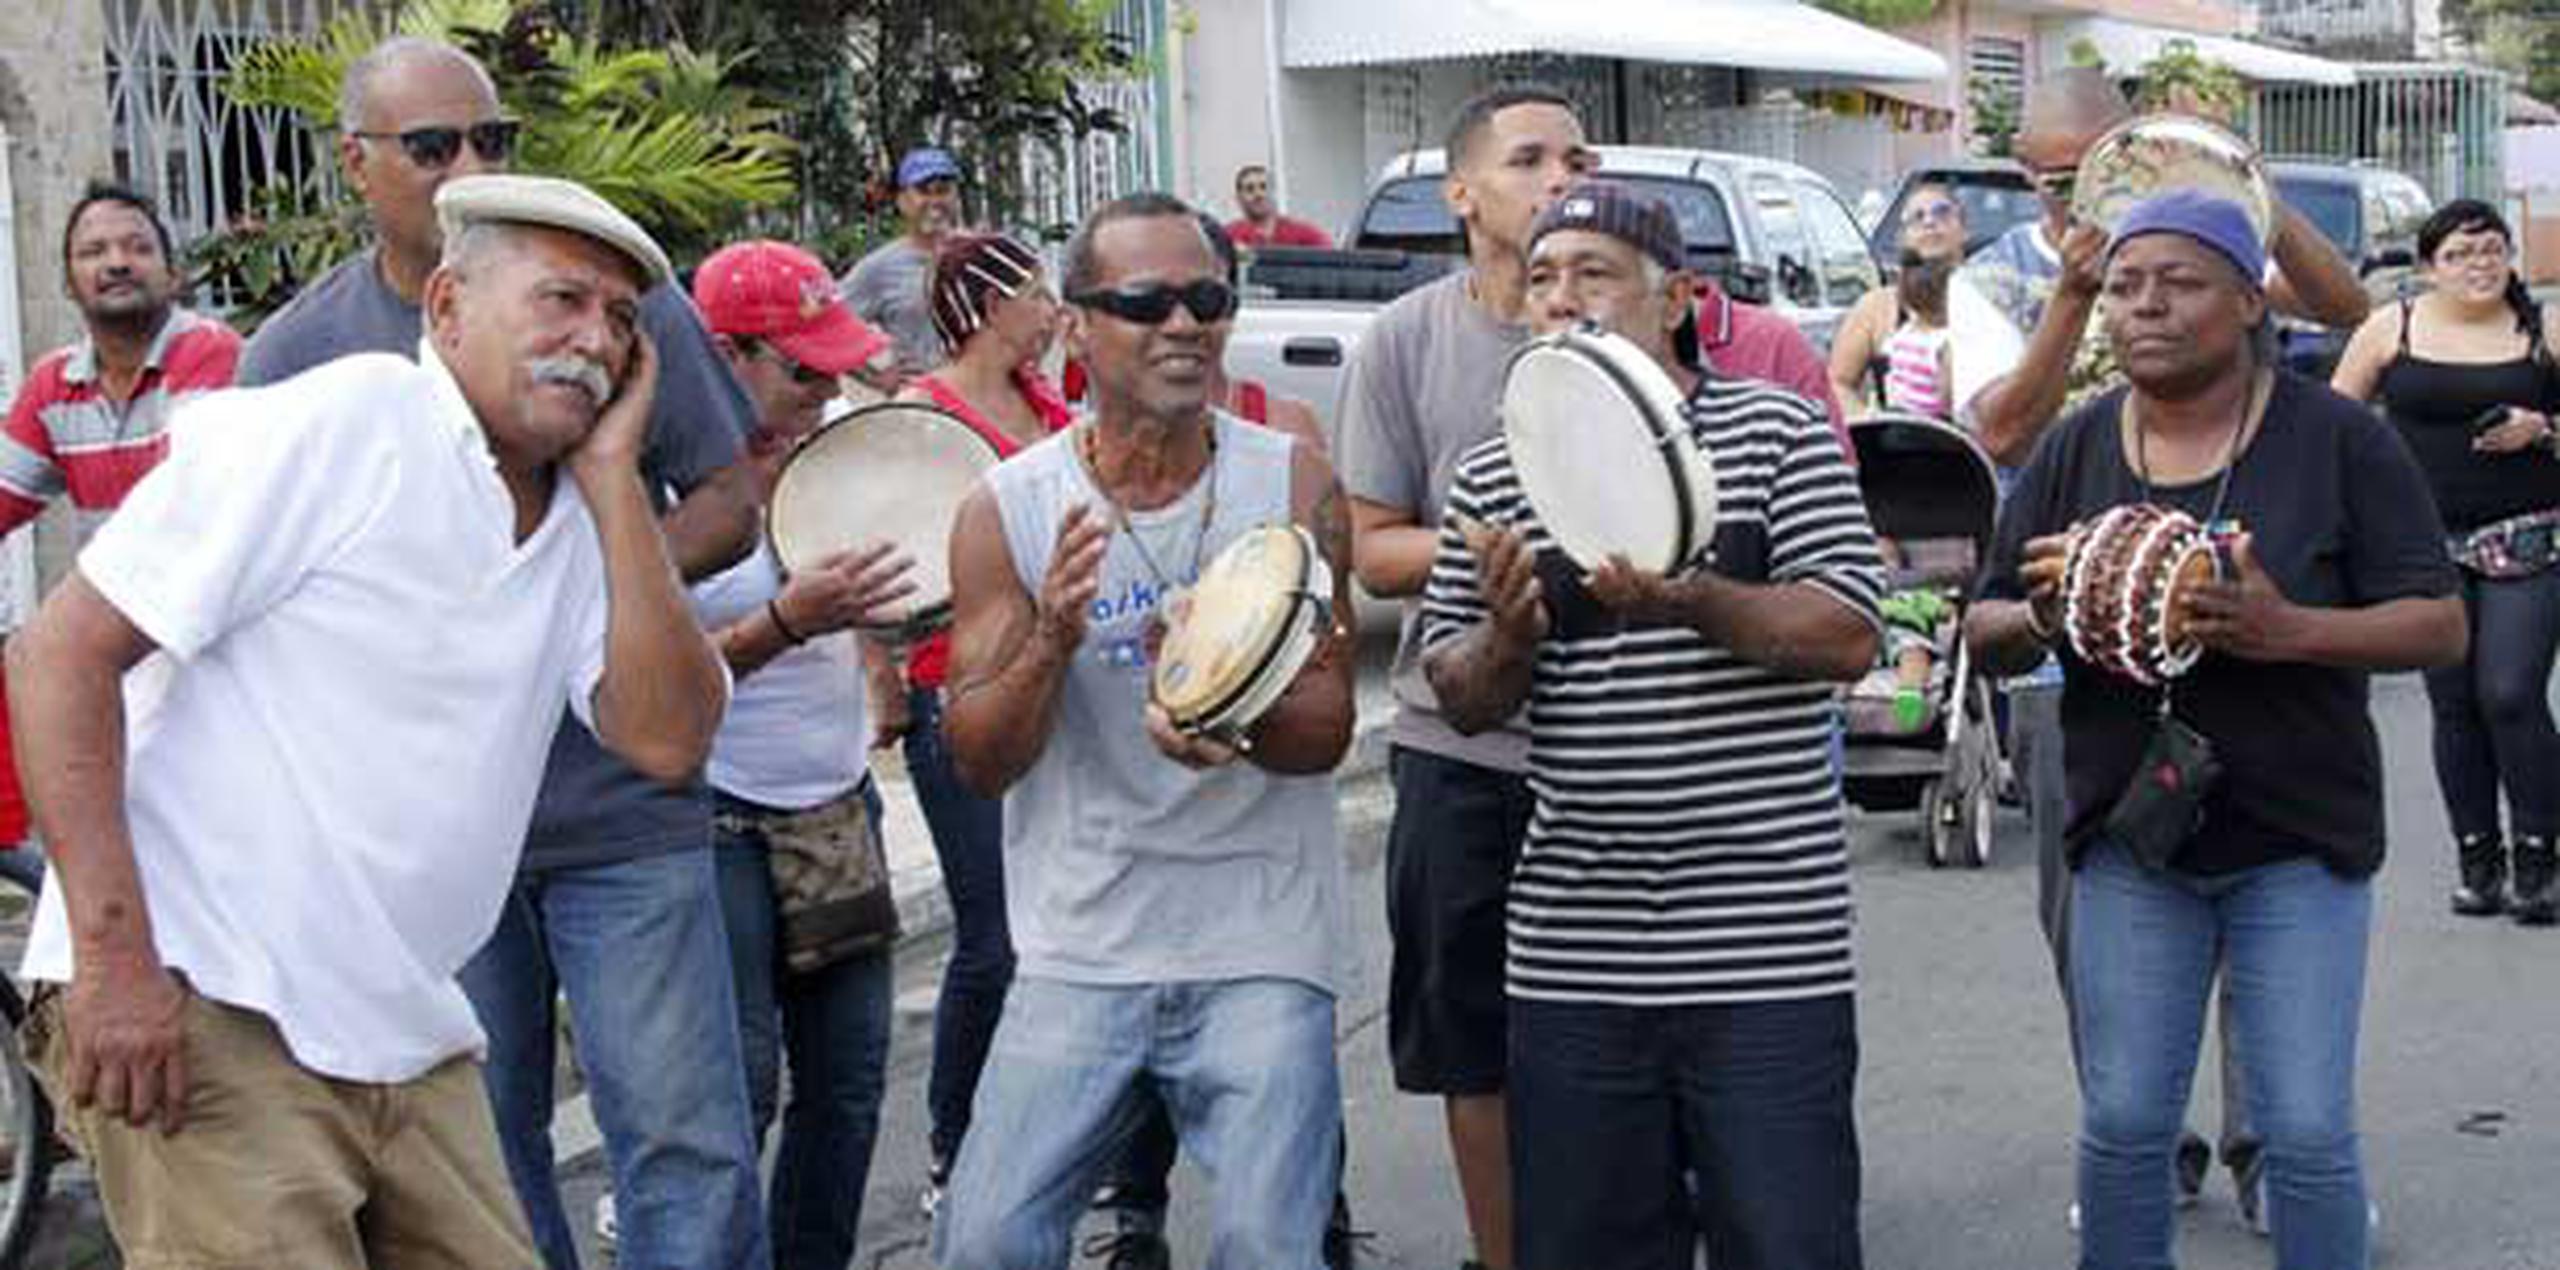 En el barrio Amelia, en Guaynabo, Varios vecinos se reúnen a despedir el año al son de música por las calles de su comunidad. (michelle.estrada@gfrmedia.com)